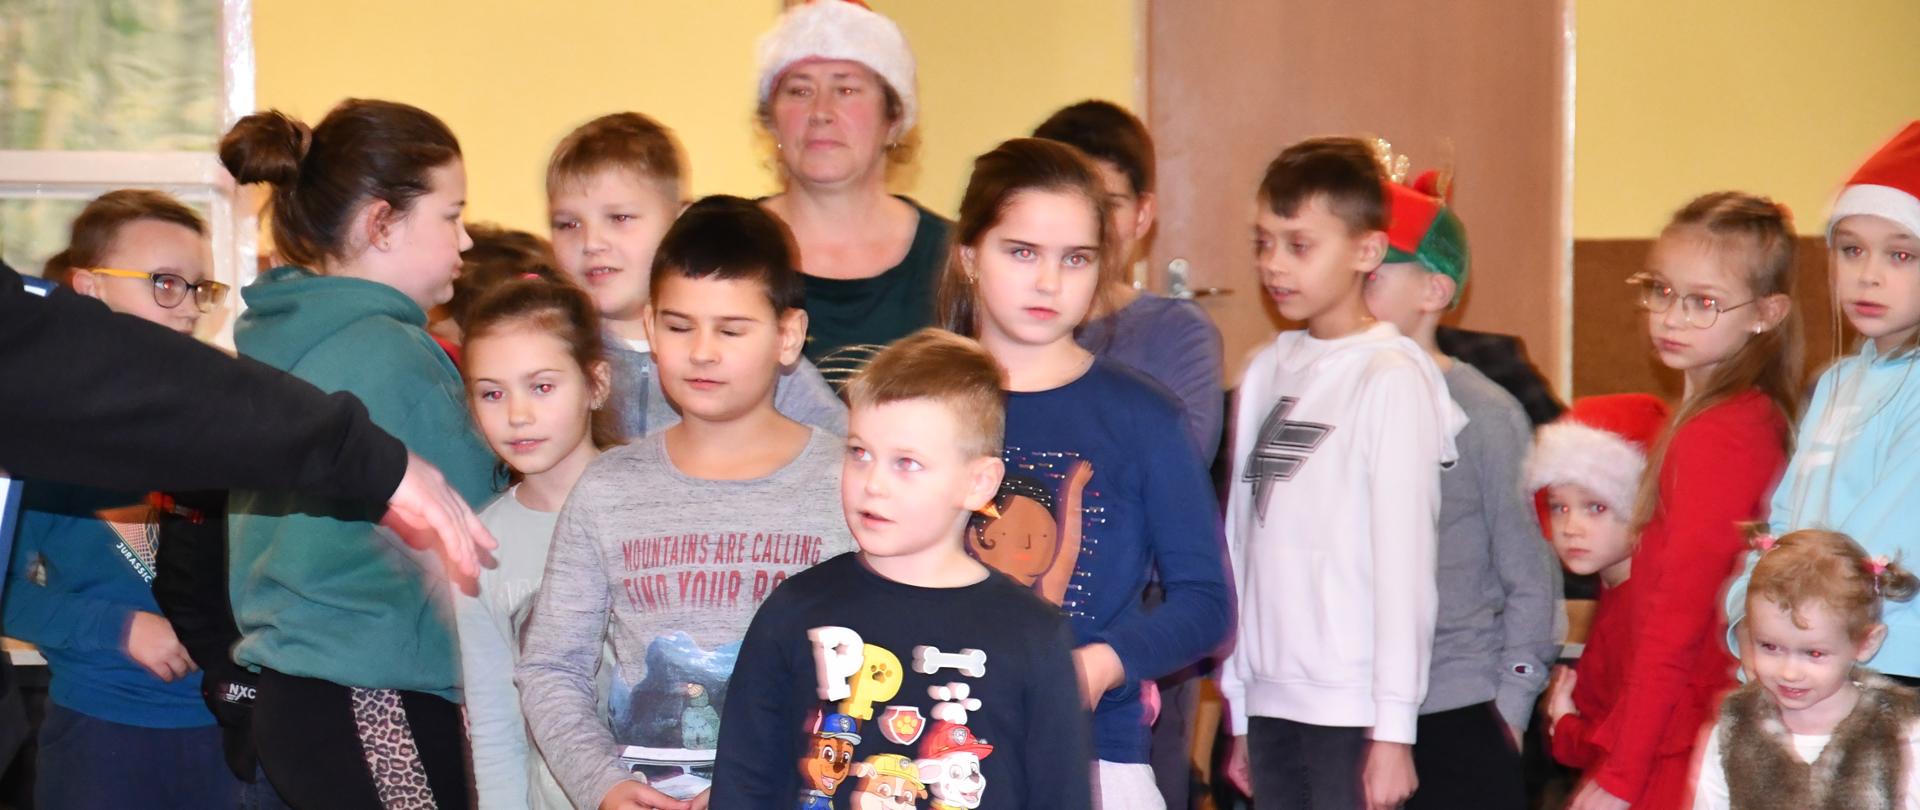 Grupa dzieci stoi przed obiektywem gotowa do konkurencji.